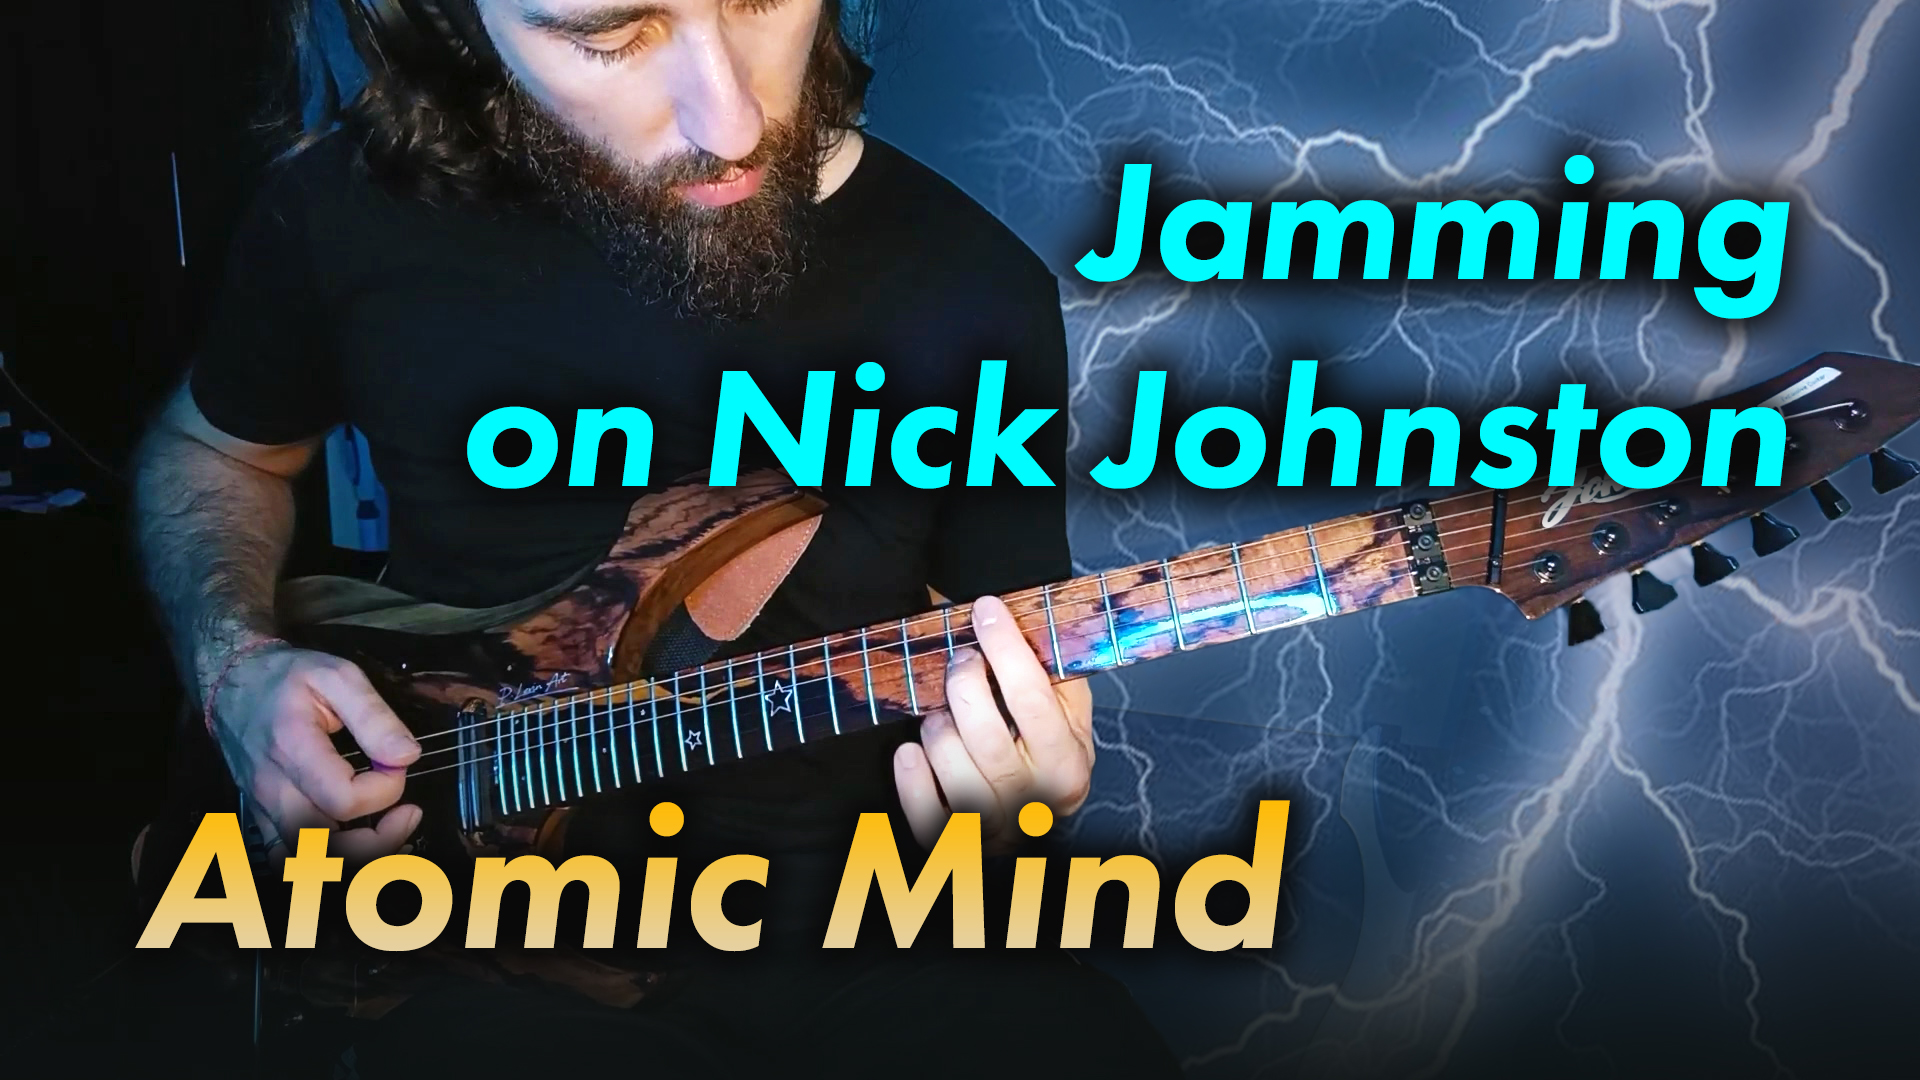 Jamming on Nick Johnston - Atomic Mind (Kirill Safonov)